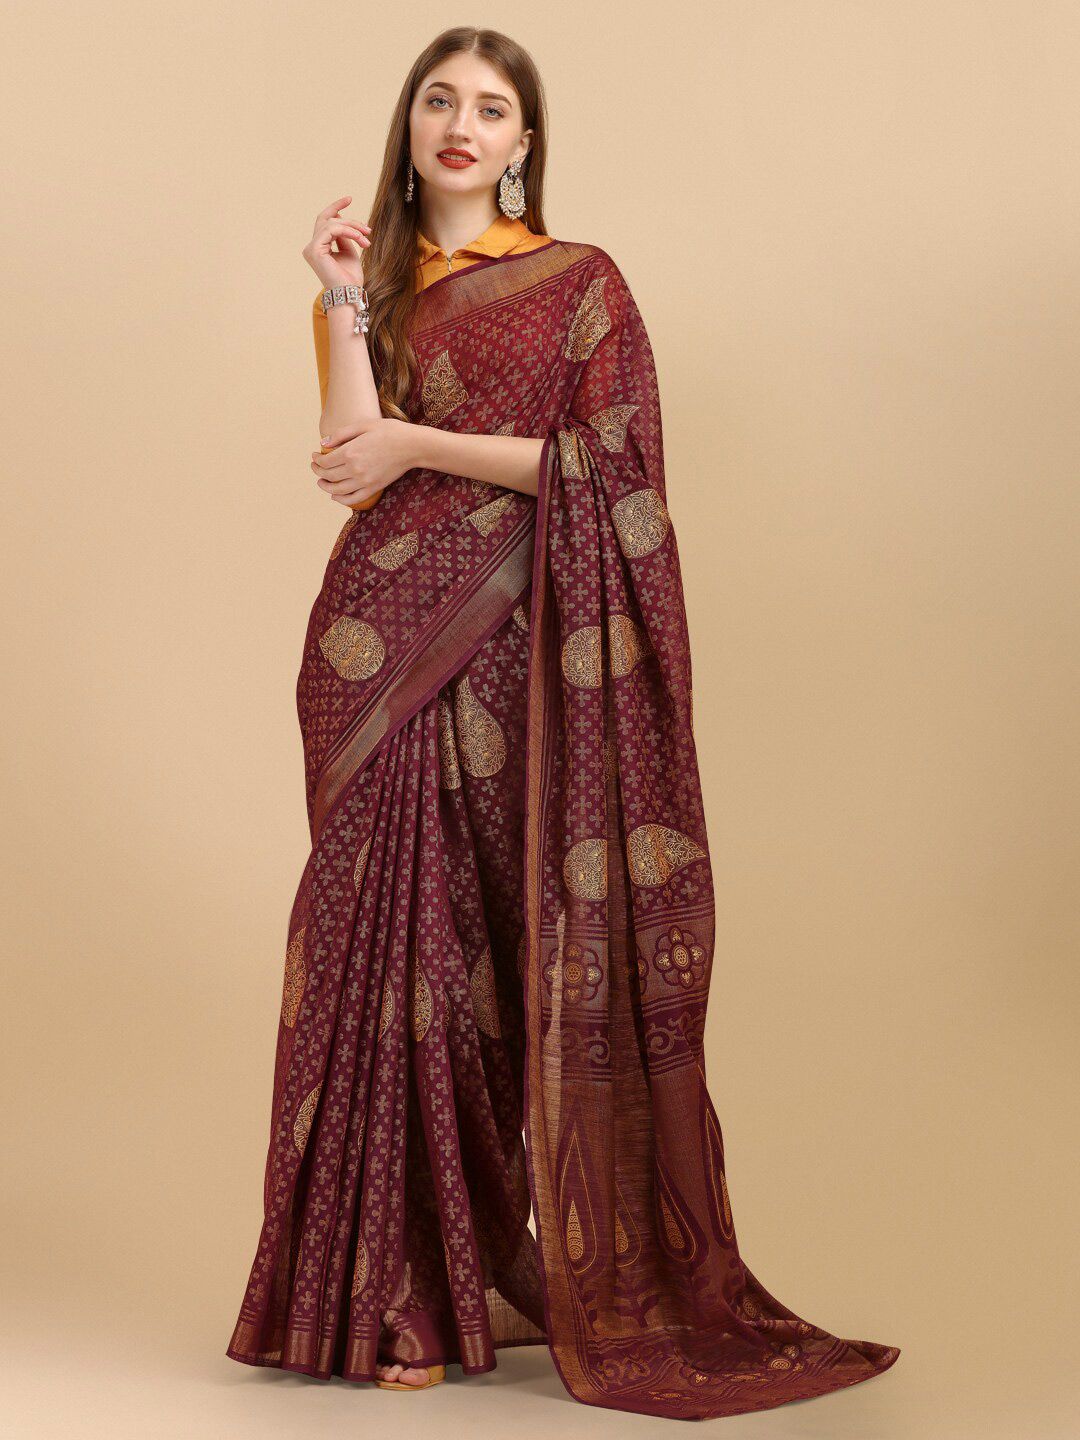 Sangria Violet & Gold-Toned Ethnic Motifs Zari Brasso Saree Price in India